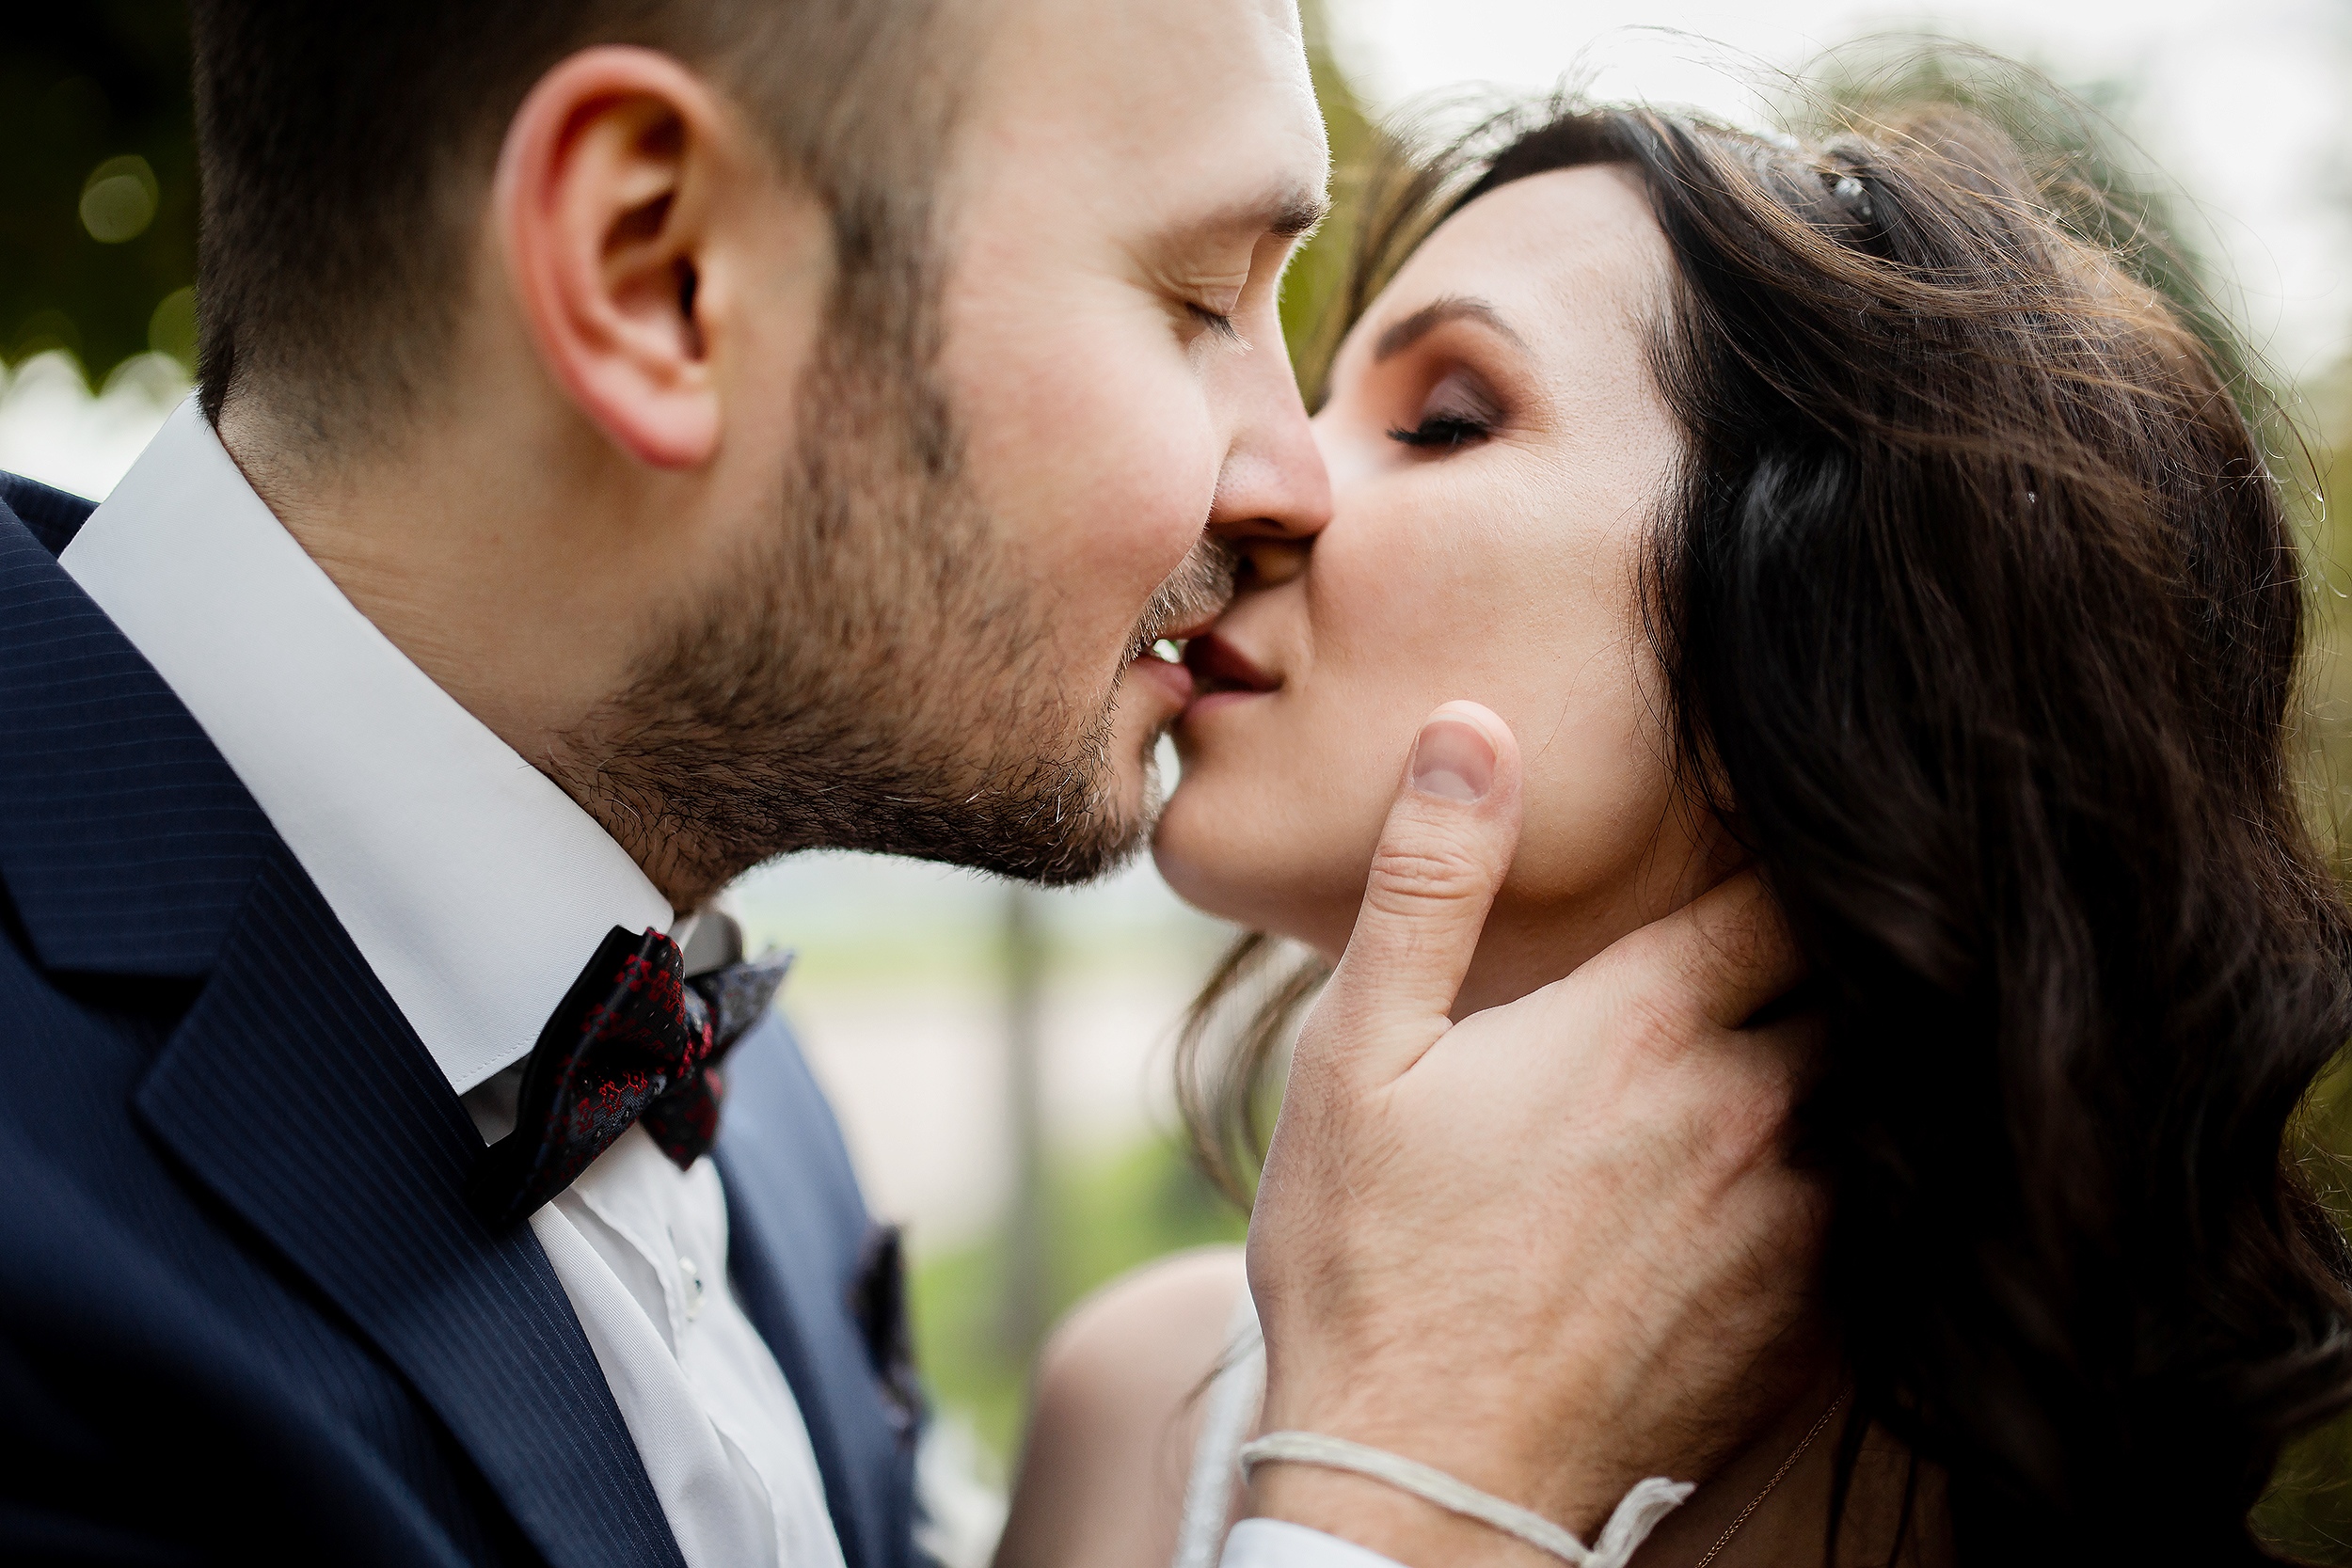 Stylish wedding photoshoot kissing pair